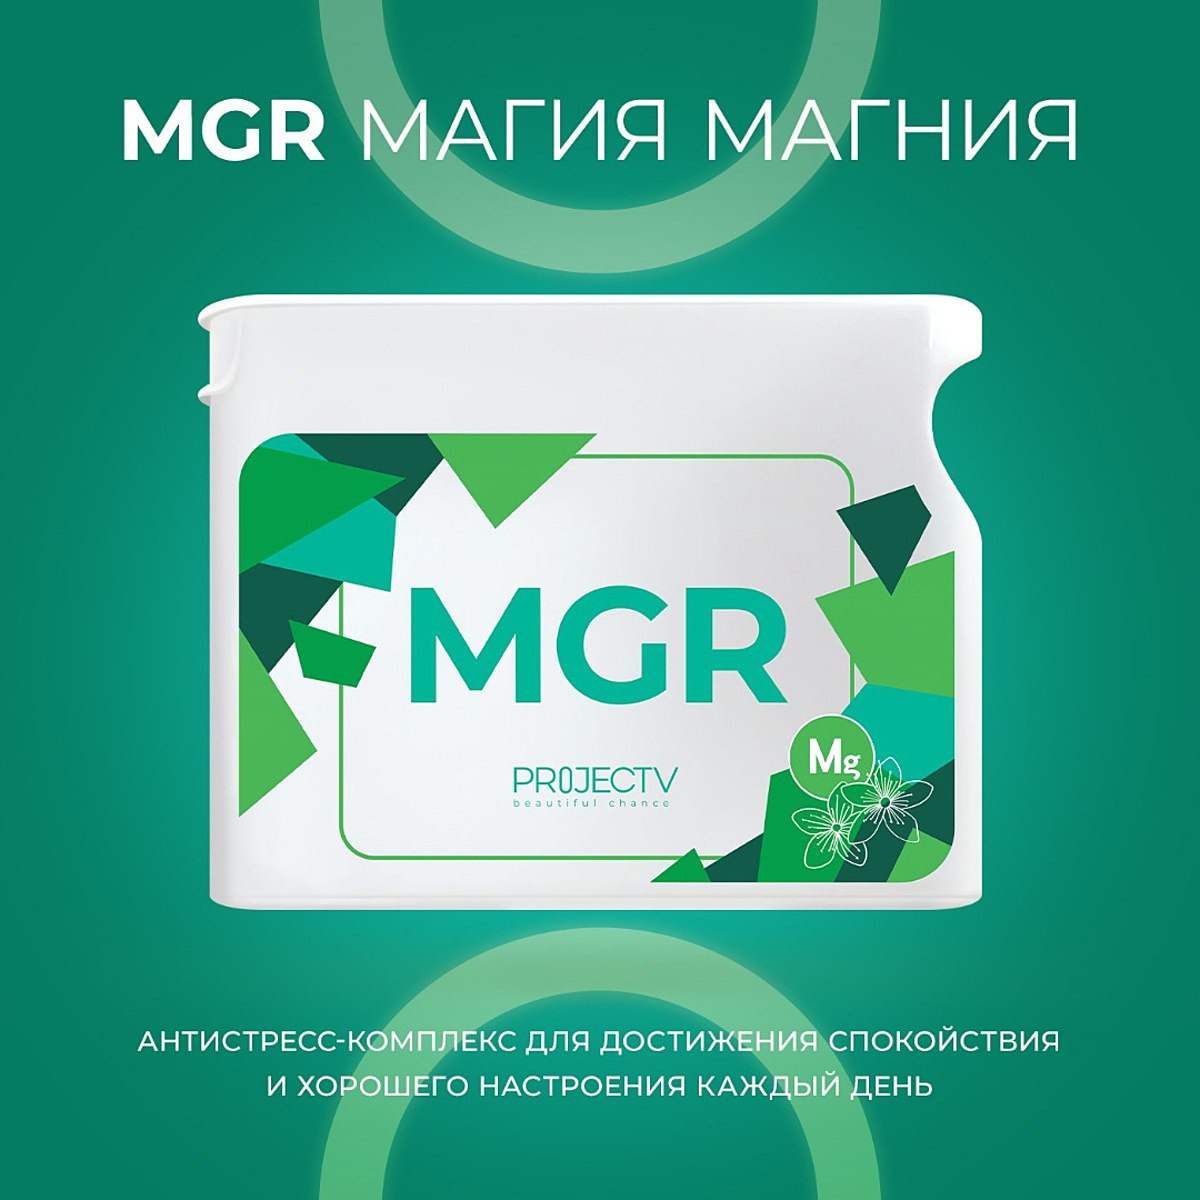 Новый продукт - MGR